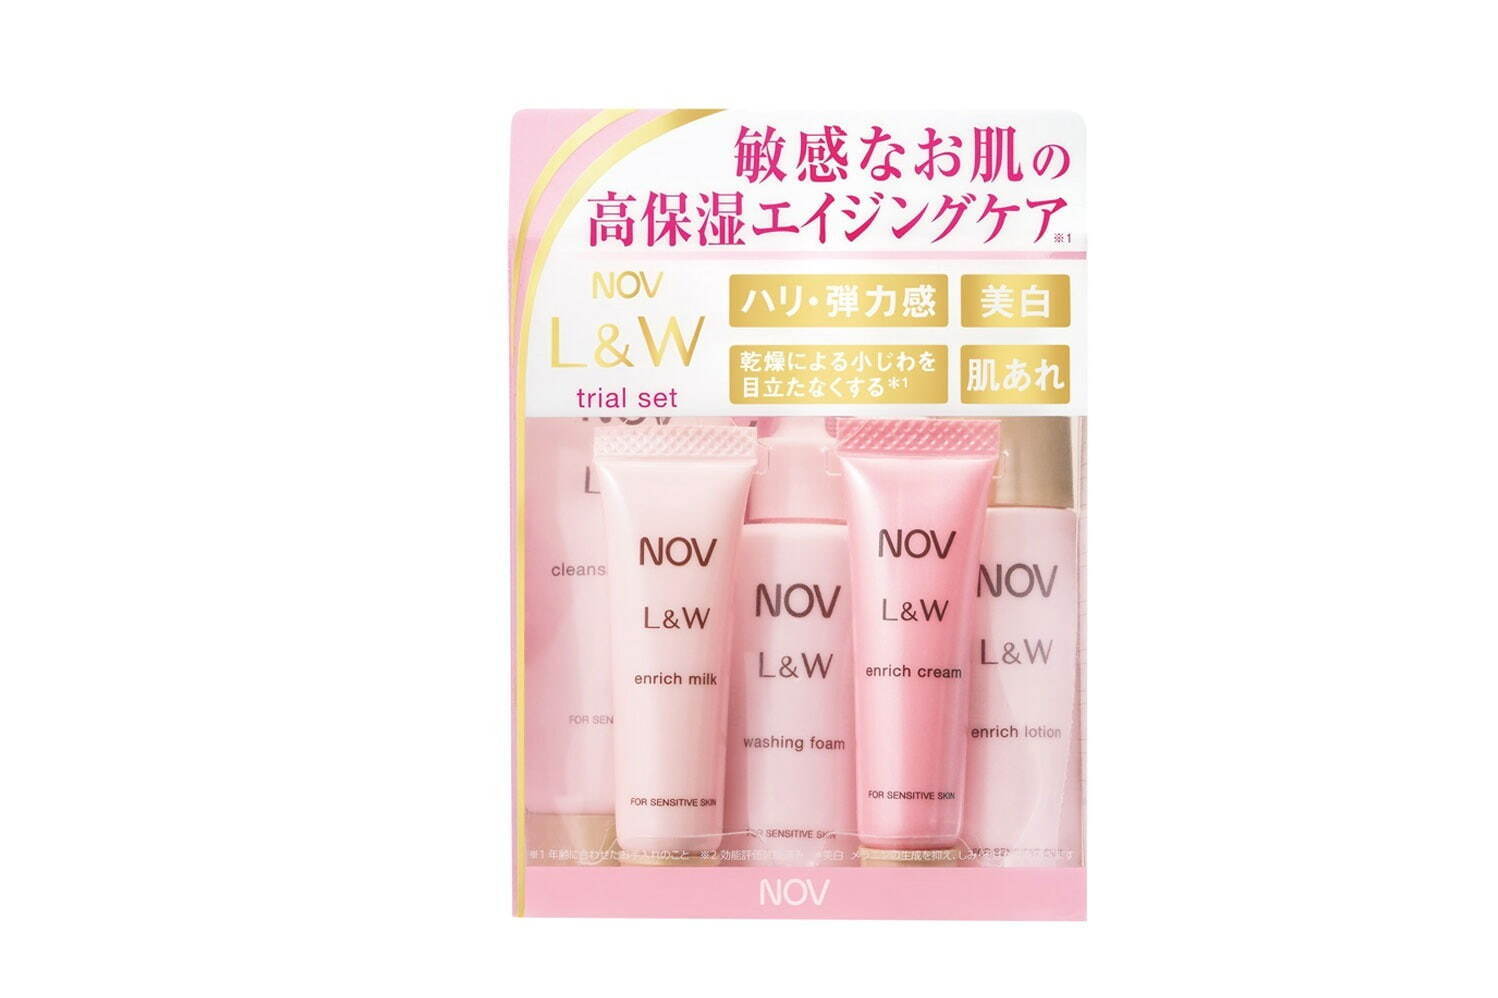 ノブ L&W トライアルセット(全品医薬部外品) 1,980円(編集部調べ)